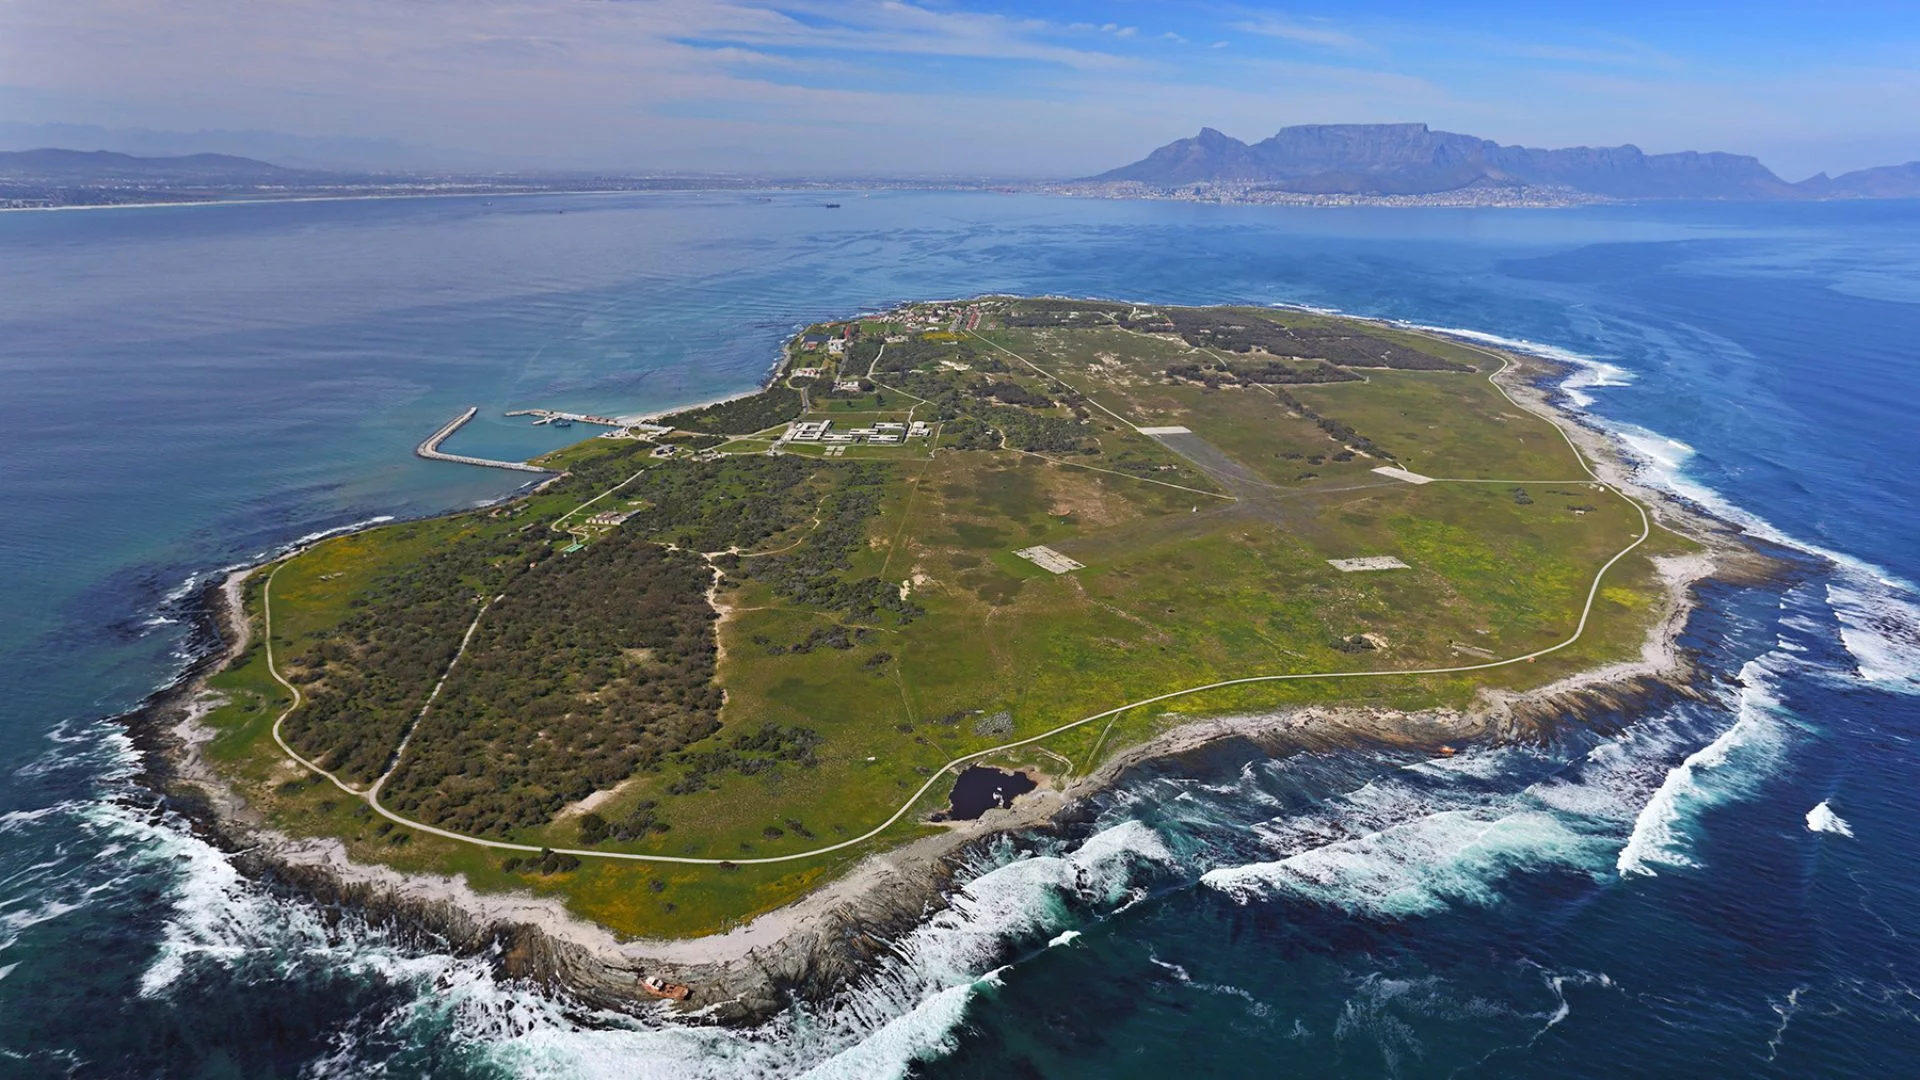 Take a tour of Robben Island